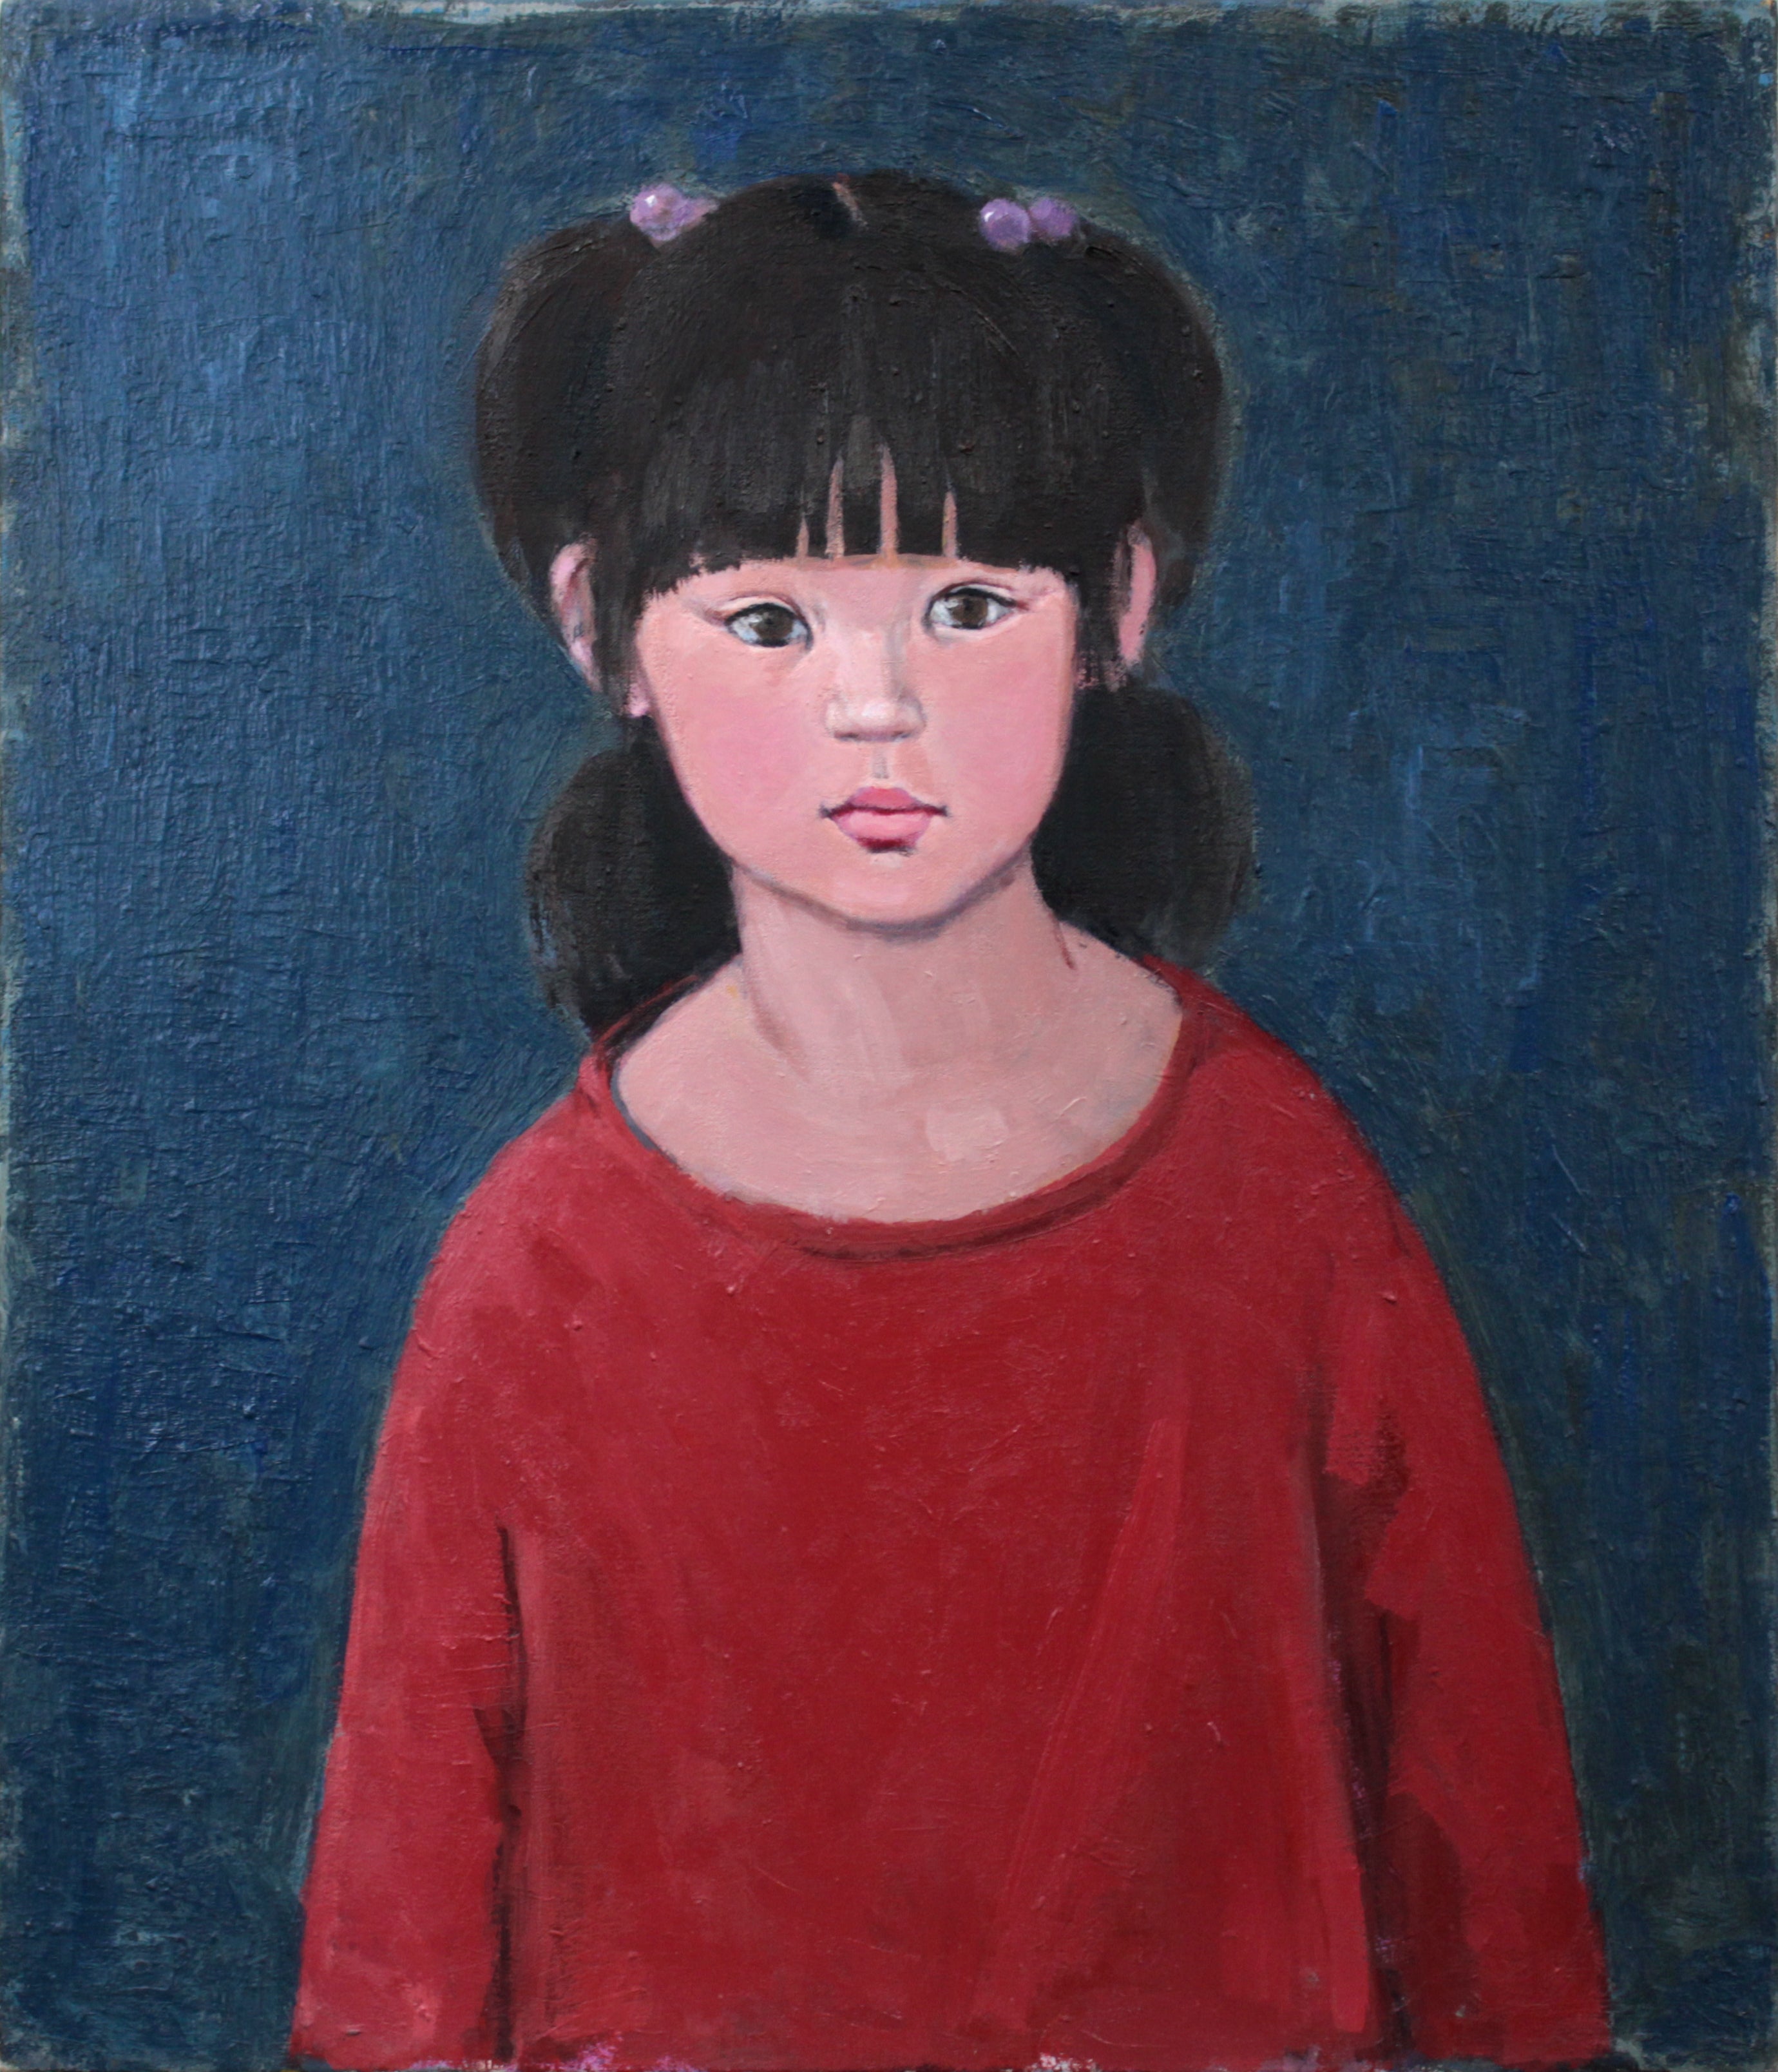 森本光子 『ぼんぼりの女の子』 油彩画 - 北海道画廊